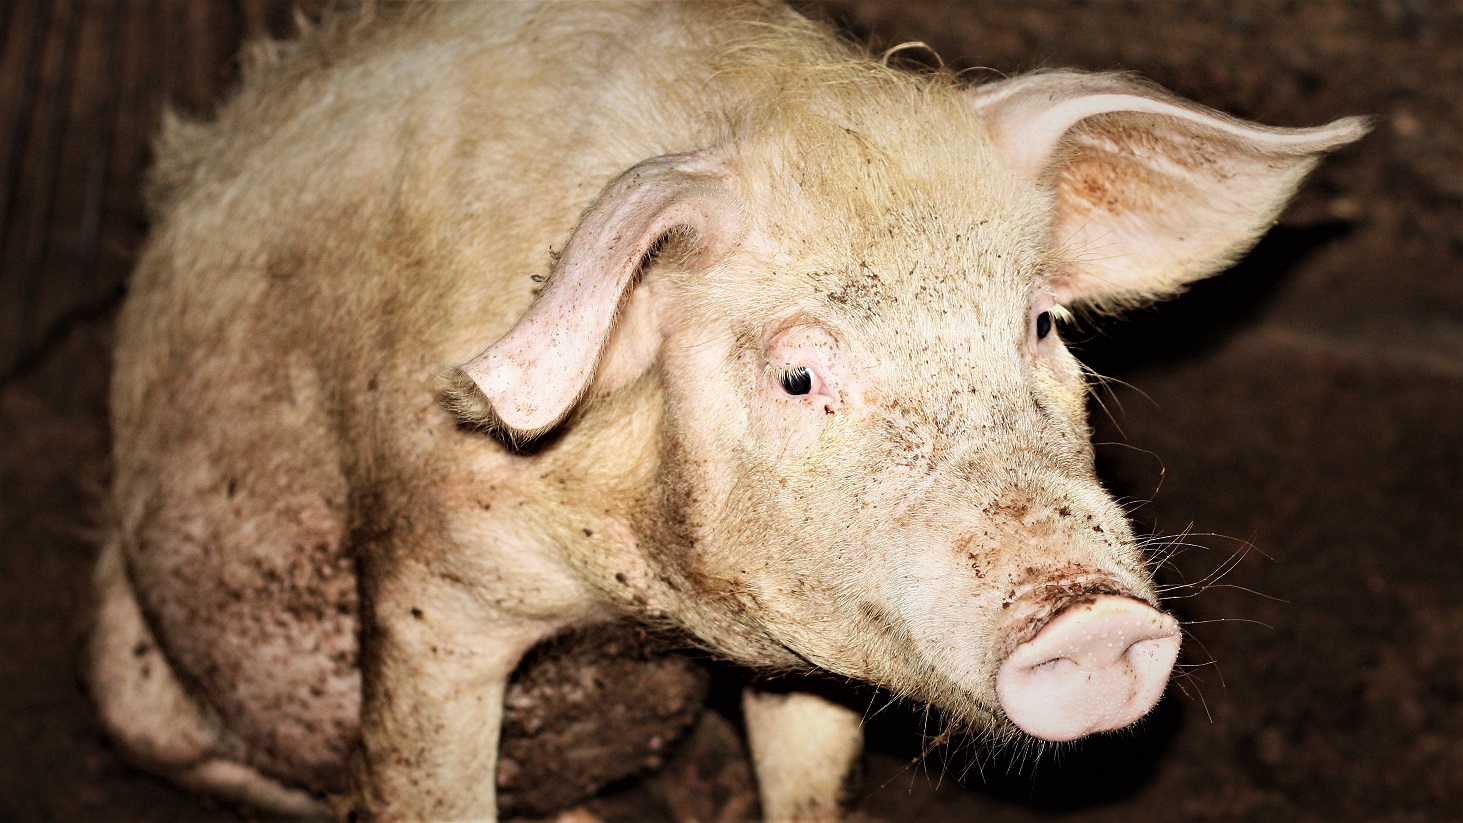 Billede af beskidt gris, der sidder på hug